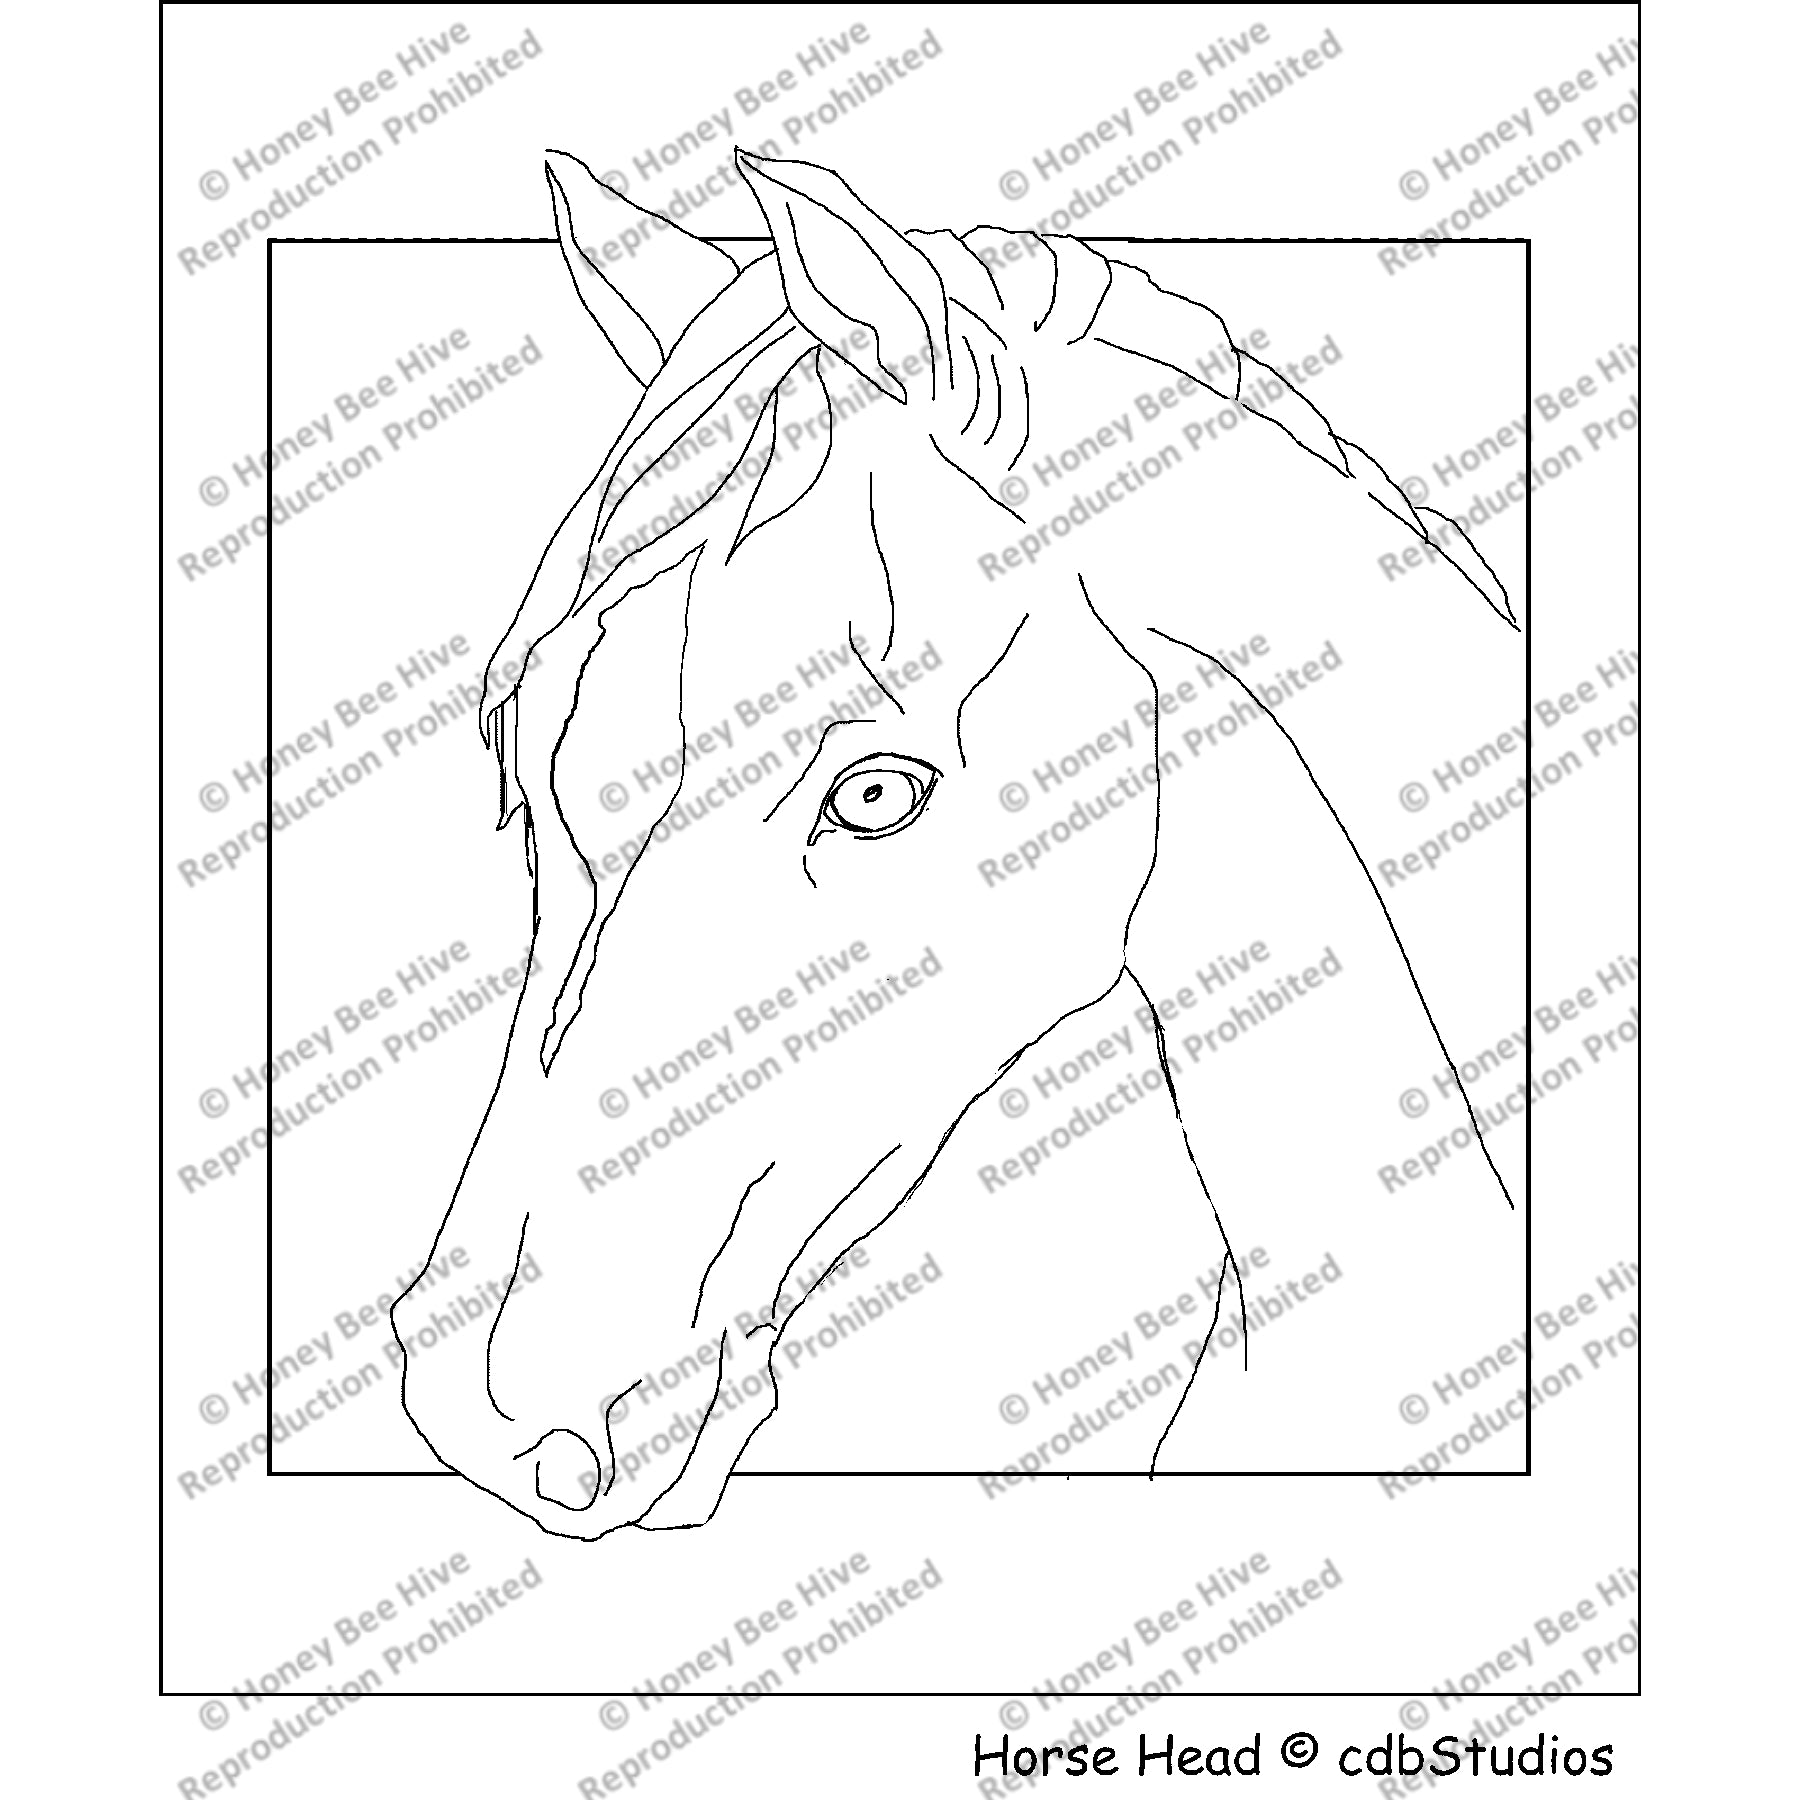 Horse Head, rug hooking pattern